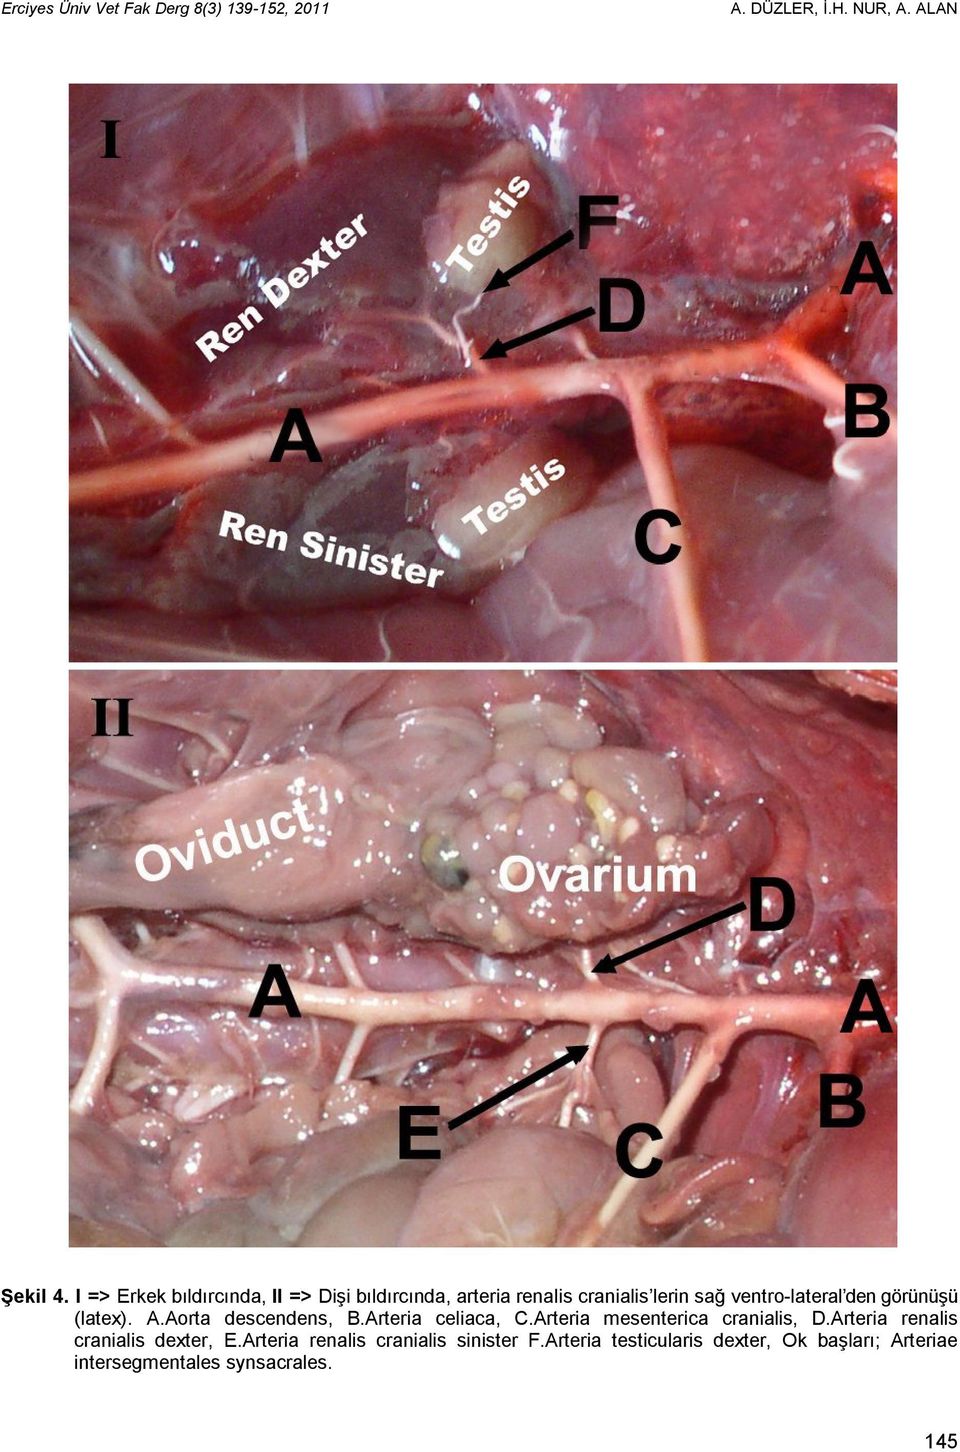 görünüşü (latex). A.Aorta descendens, B.Arteria celiaca, C.Arteria mesenterica cranialis, D.